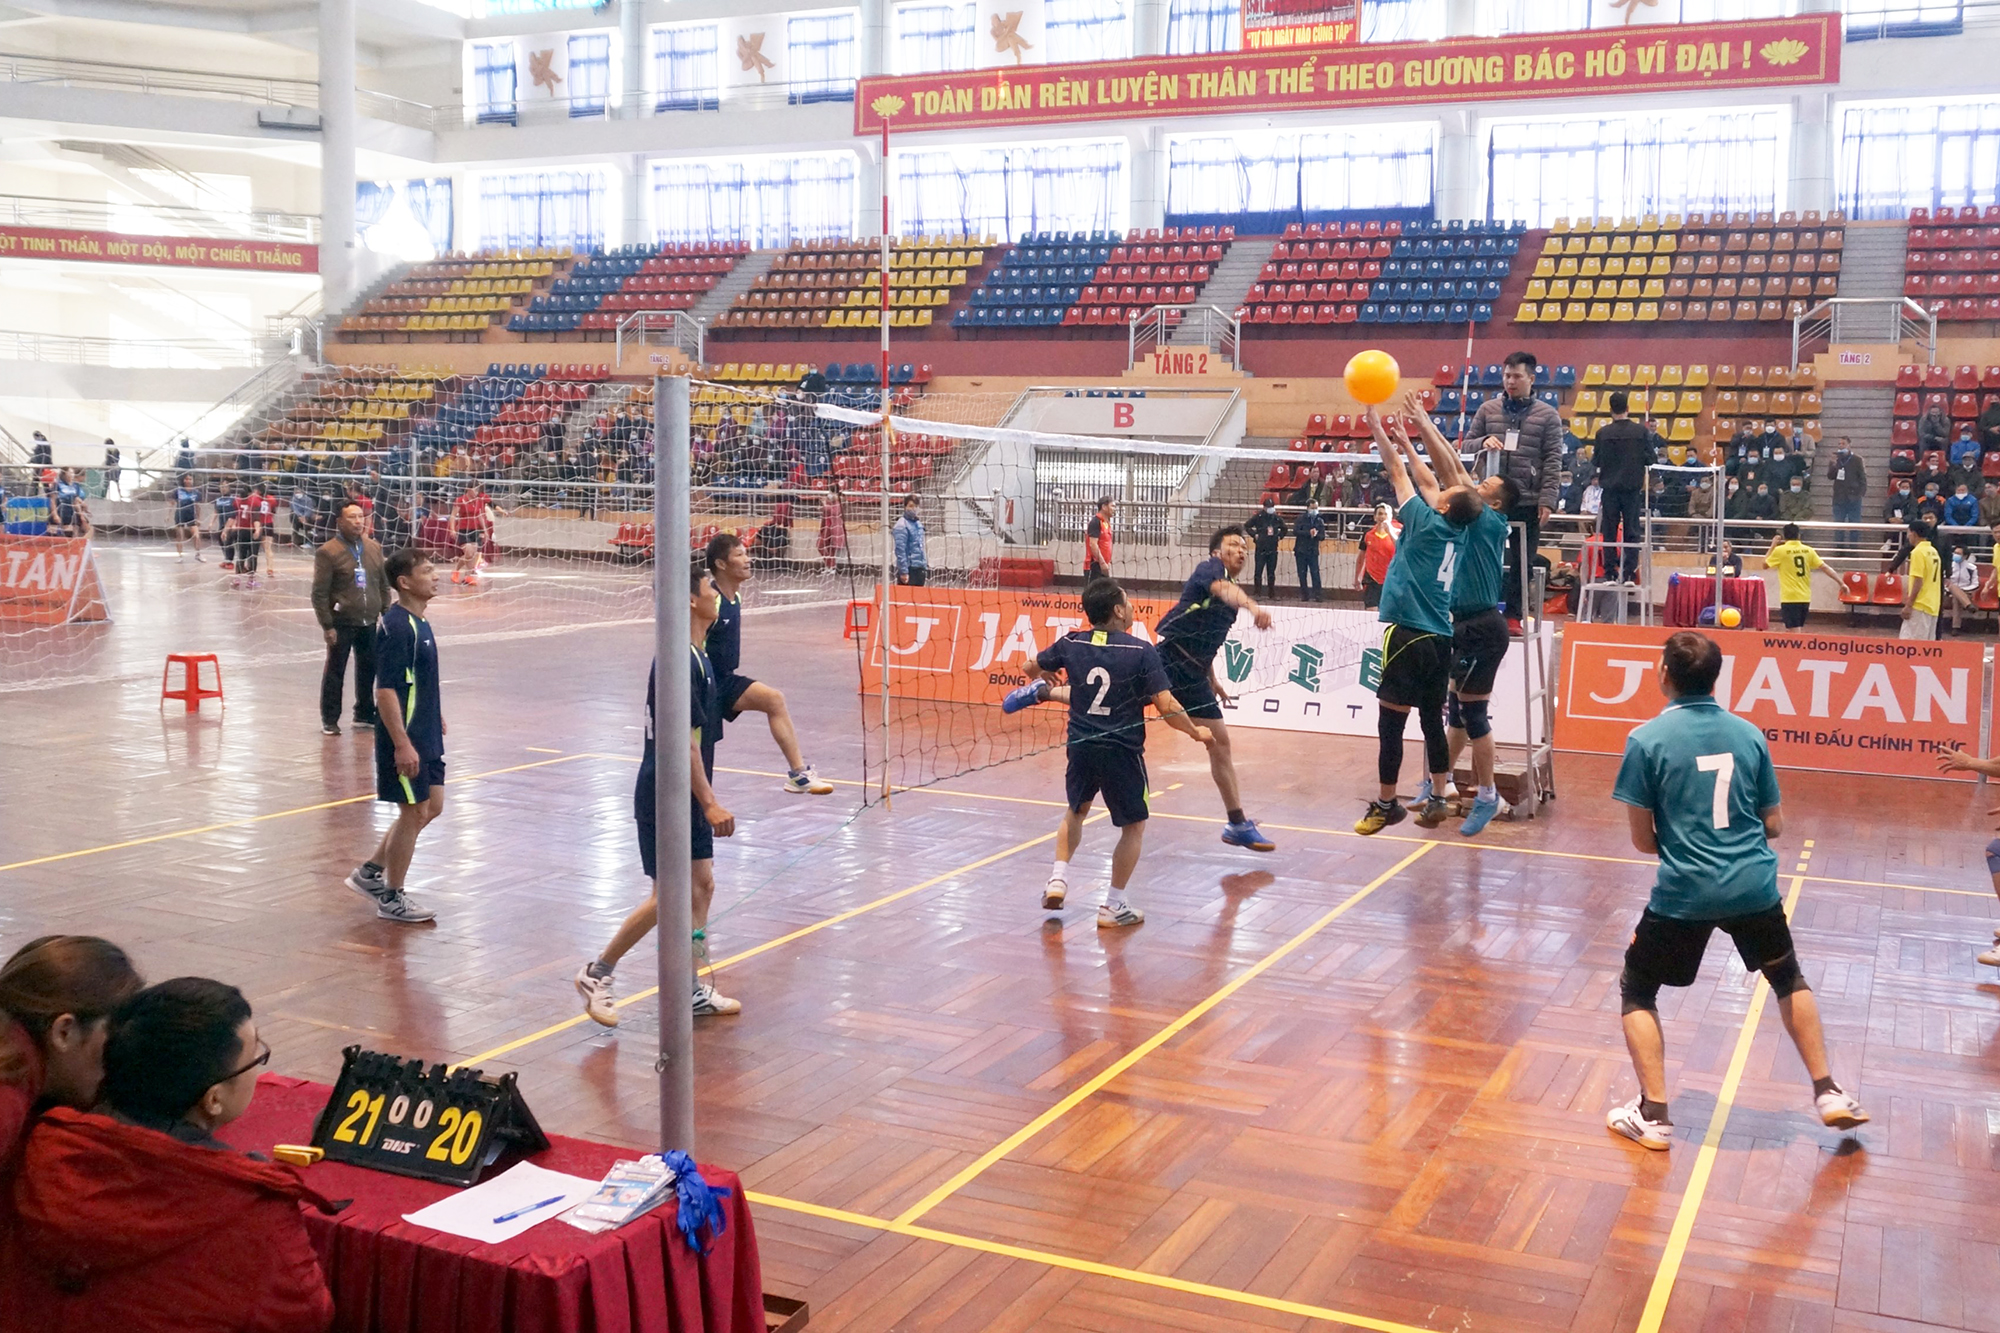 Khai mạc các môn thi đấu Đại hội Thể dục thể thao tỉnh Bắc Kạn lần thứ VI - Ảnh 4.